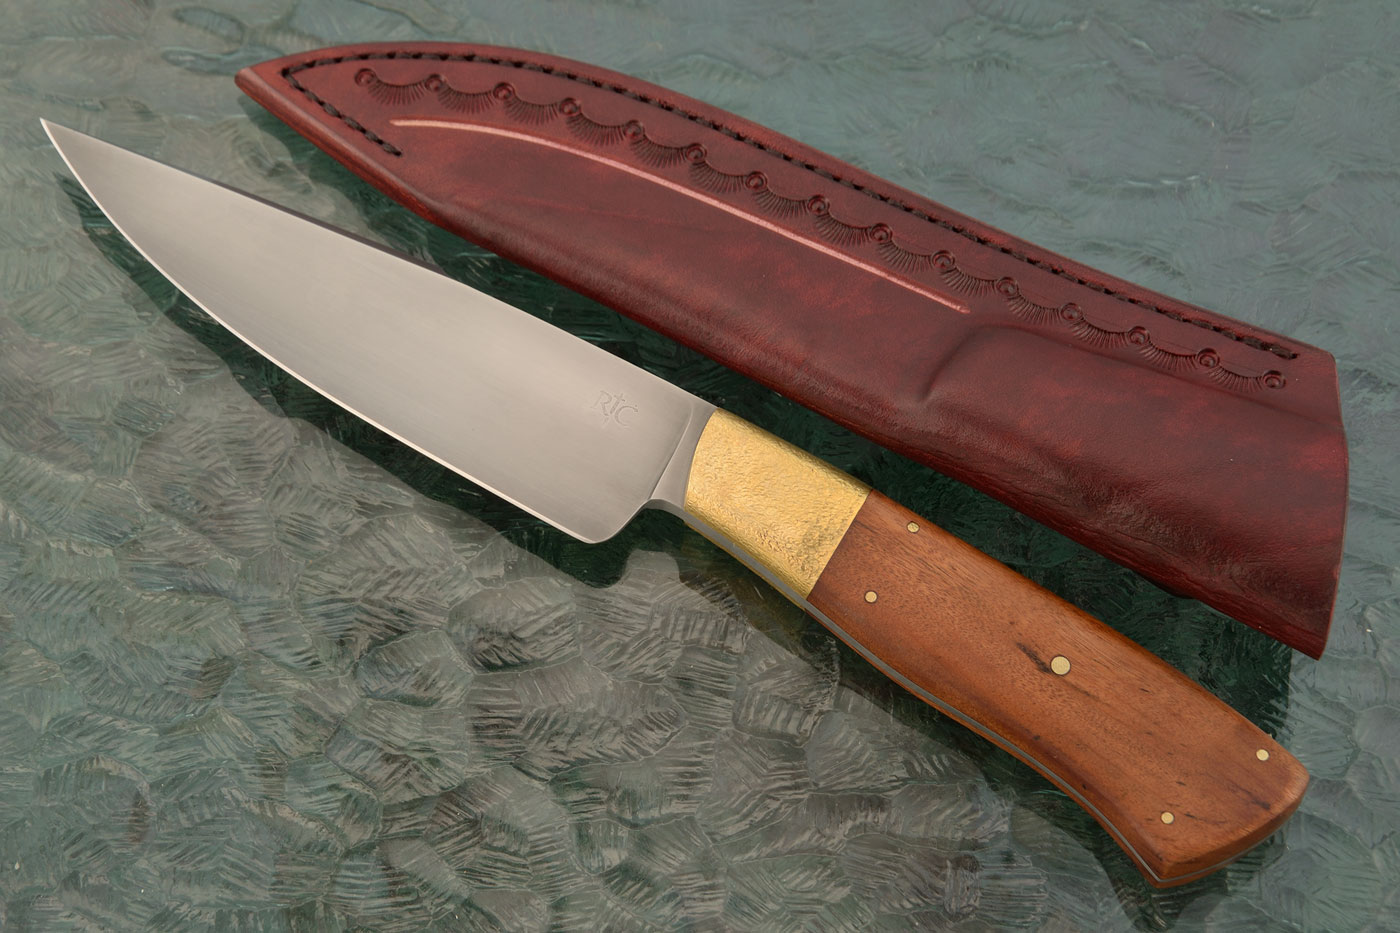 Rhodesian Scout Field Knife with Teak